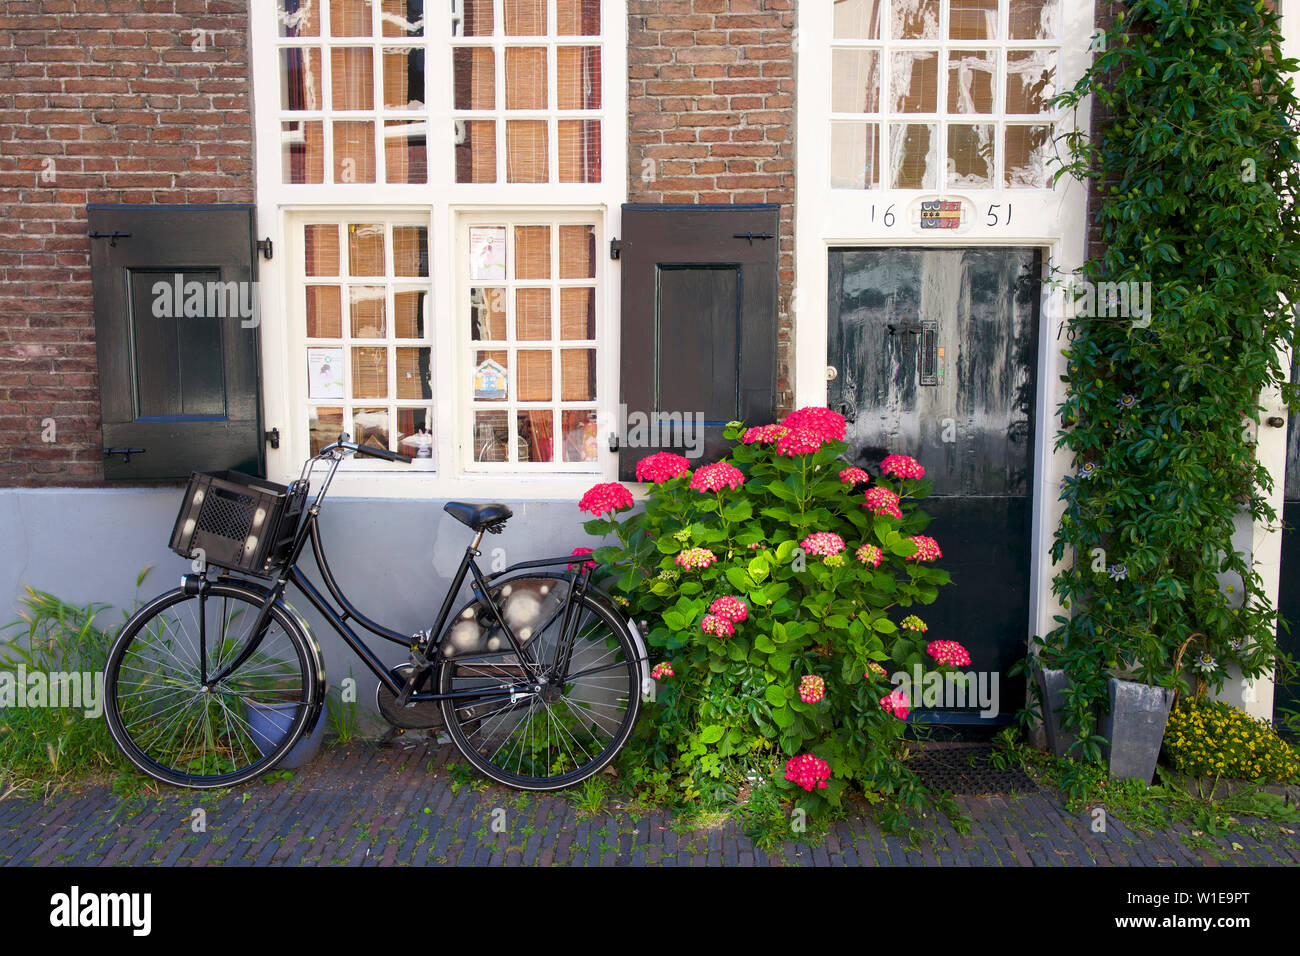 Vieux vélo à l'extérieur d'une maison de la vieille ville, Utrecht, Pays-Bas Banque D'Images